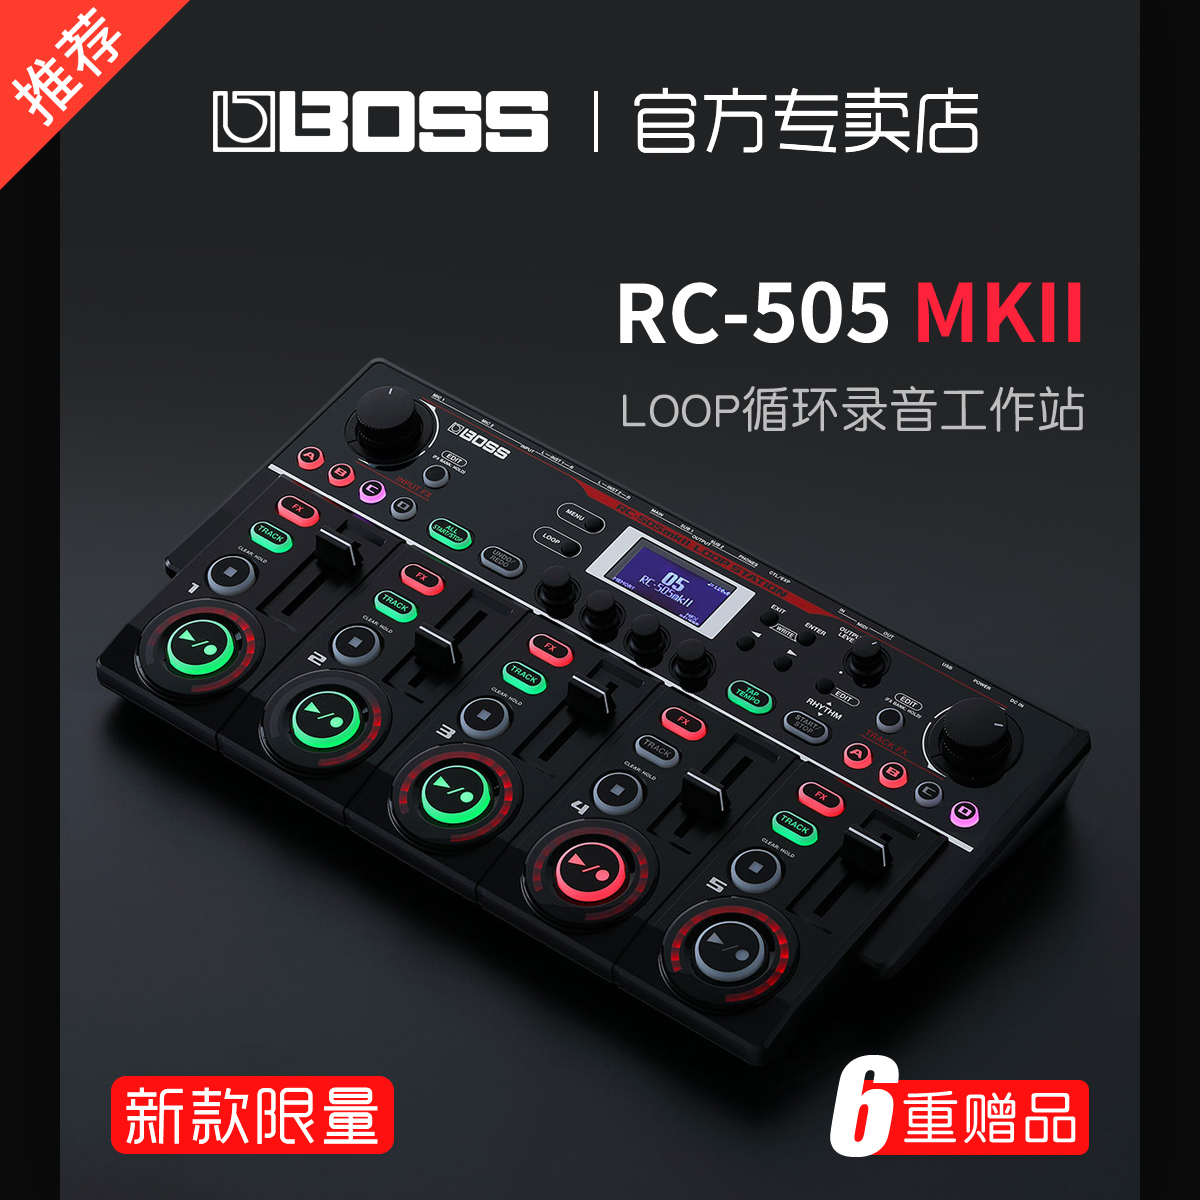 BOSS 롤랜드 RC505 MK2 RC202 BEATBOX 녹음 워크 스테이션 LOOP 프레이즈 루프 음향 장치